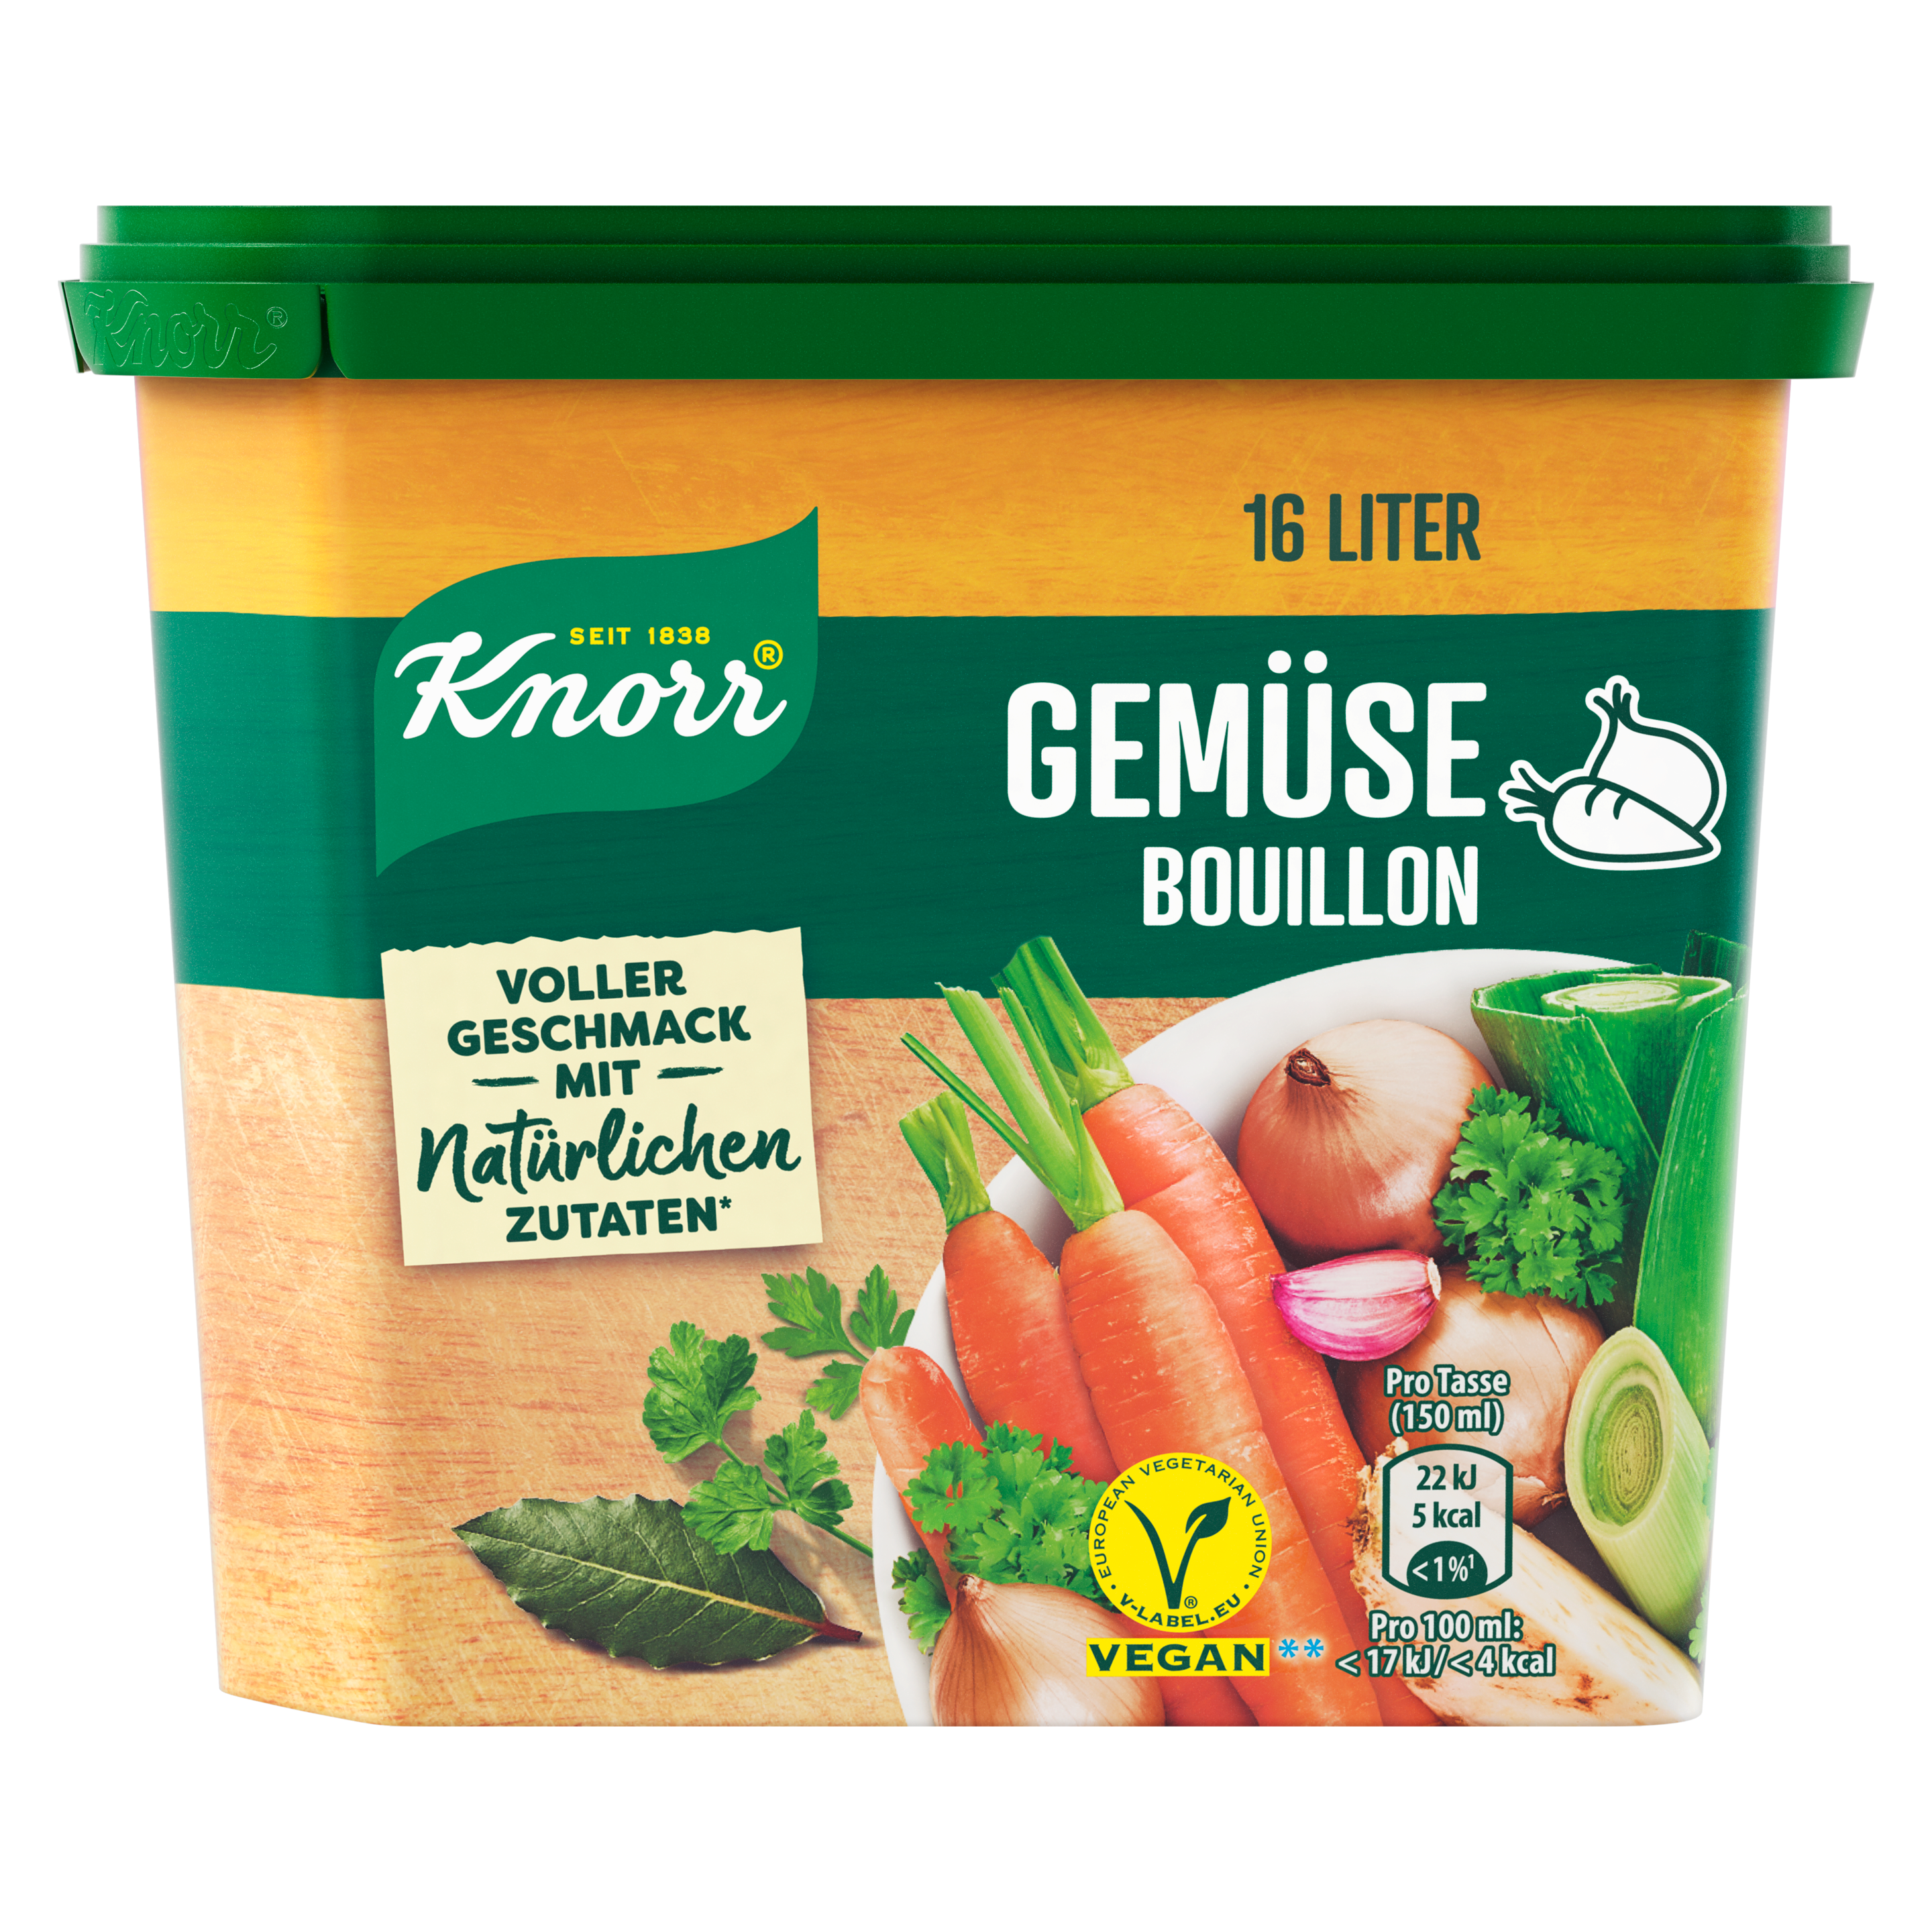 Knorr Gemüse Bouillon vegan 16 Liter